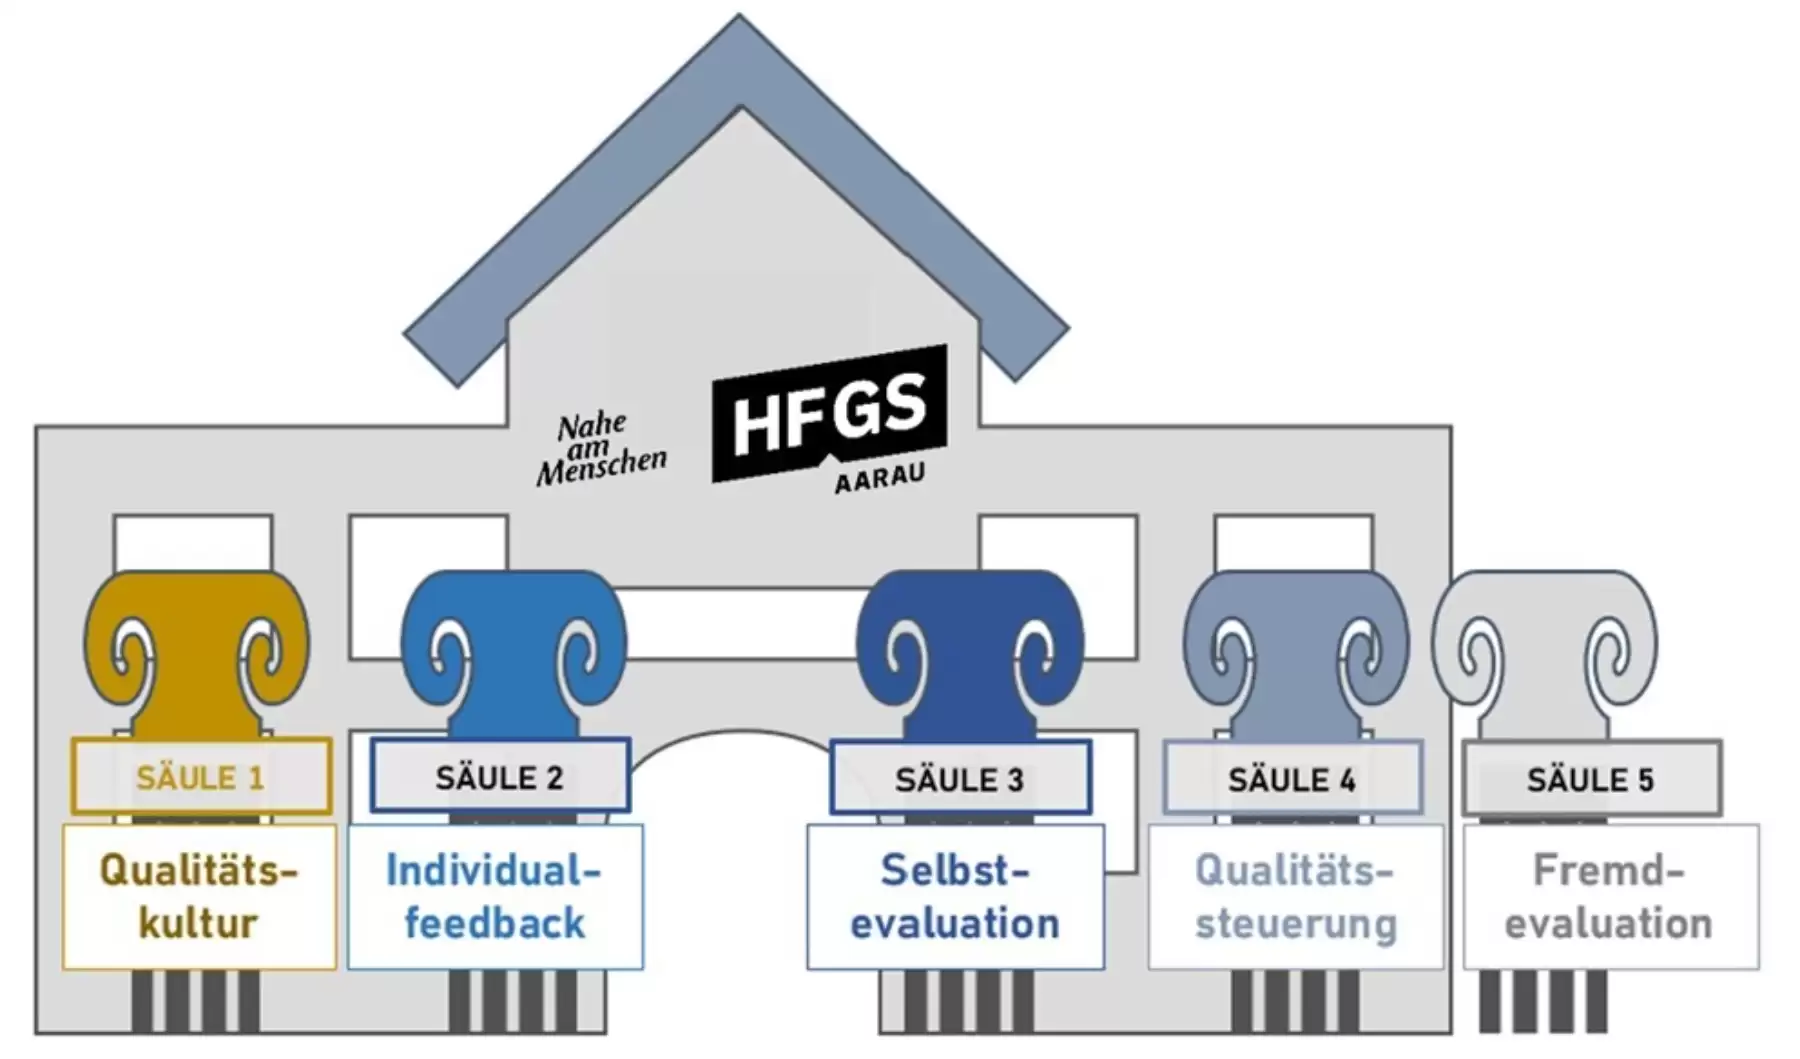 Die fünf Säulen der Qualität der HFGS.

Säule 1: Qualitätskultur
Säule 2: Individualfeedback
Säule 3: Selbstevaluation
Säule 4: Qualitätssteuerung
Säule 5: Fremdevaluation